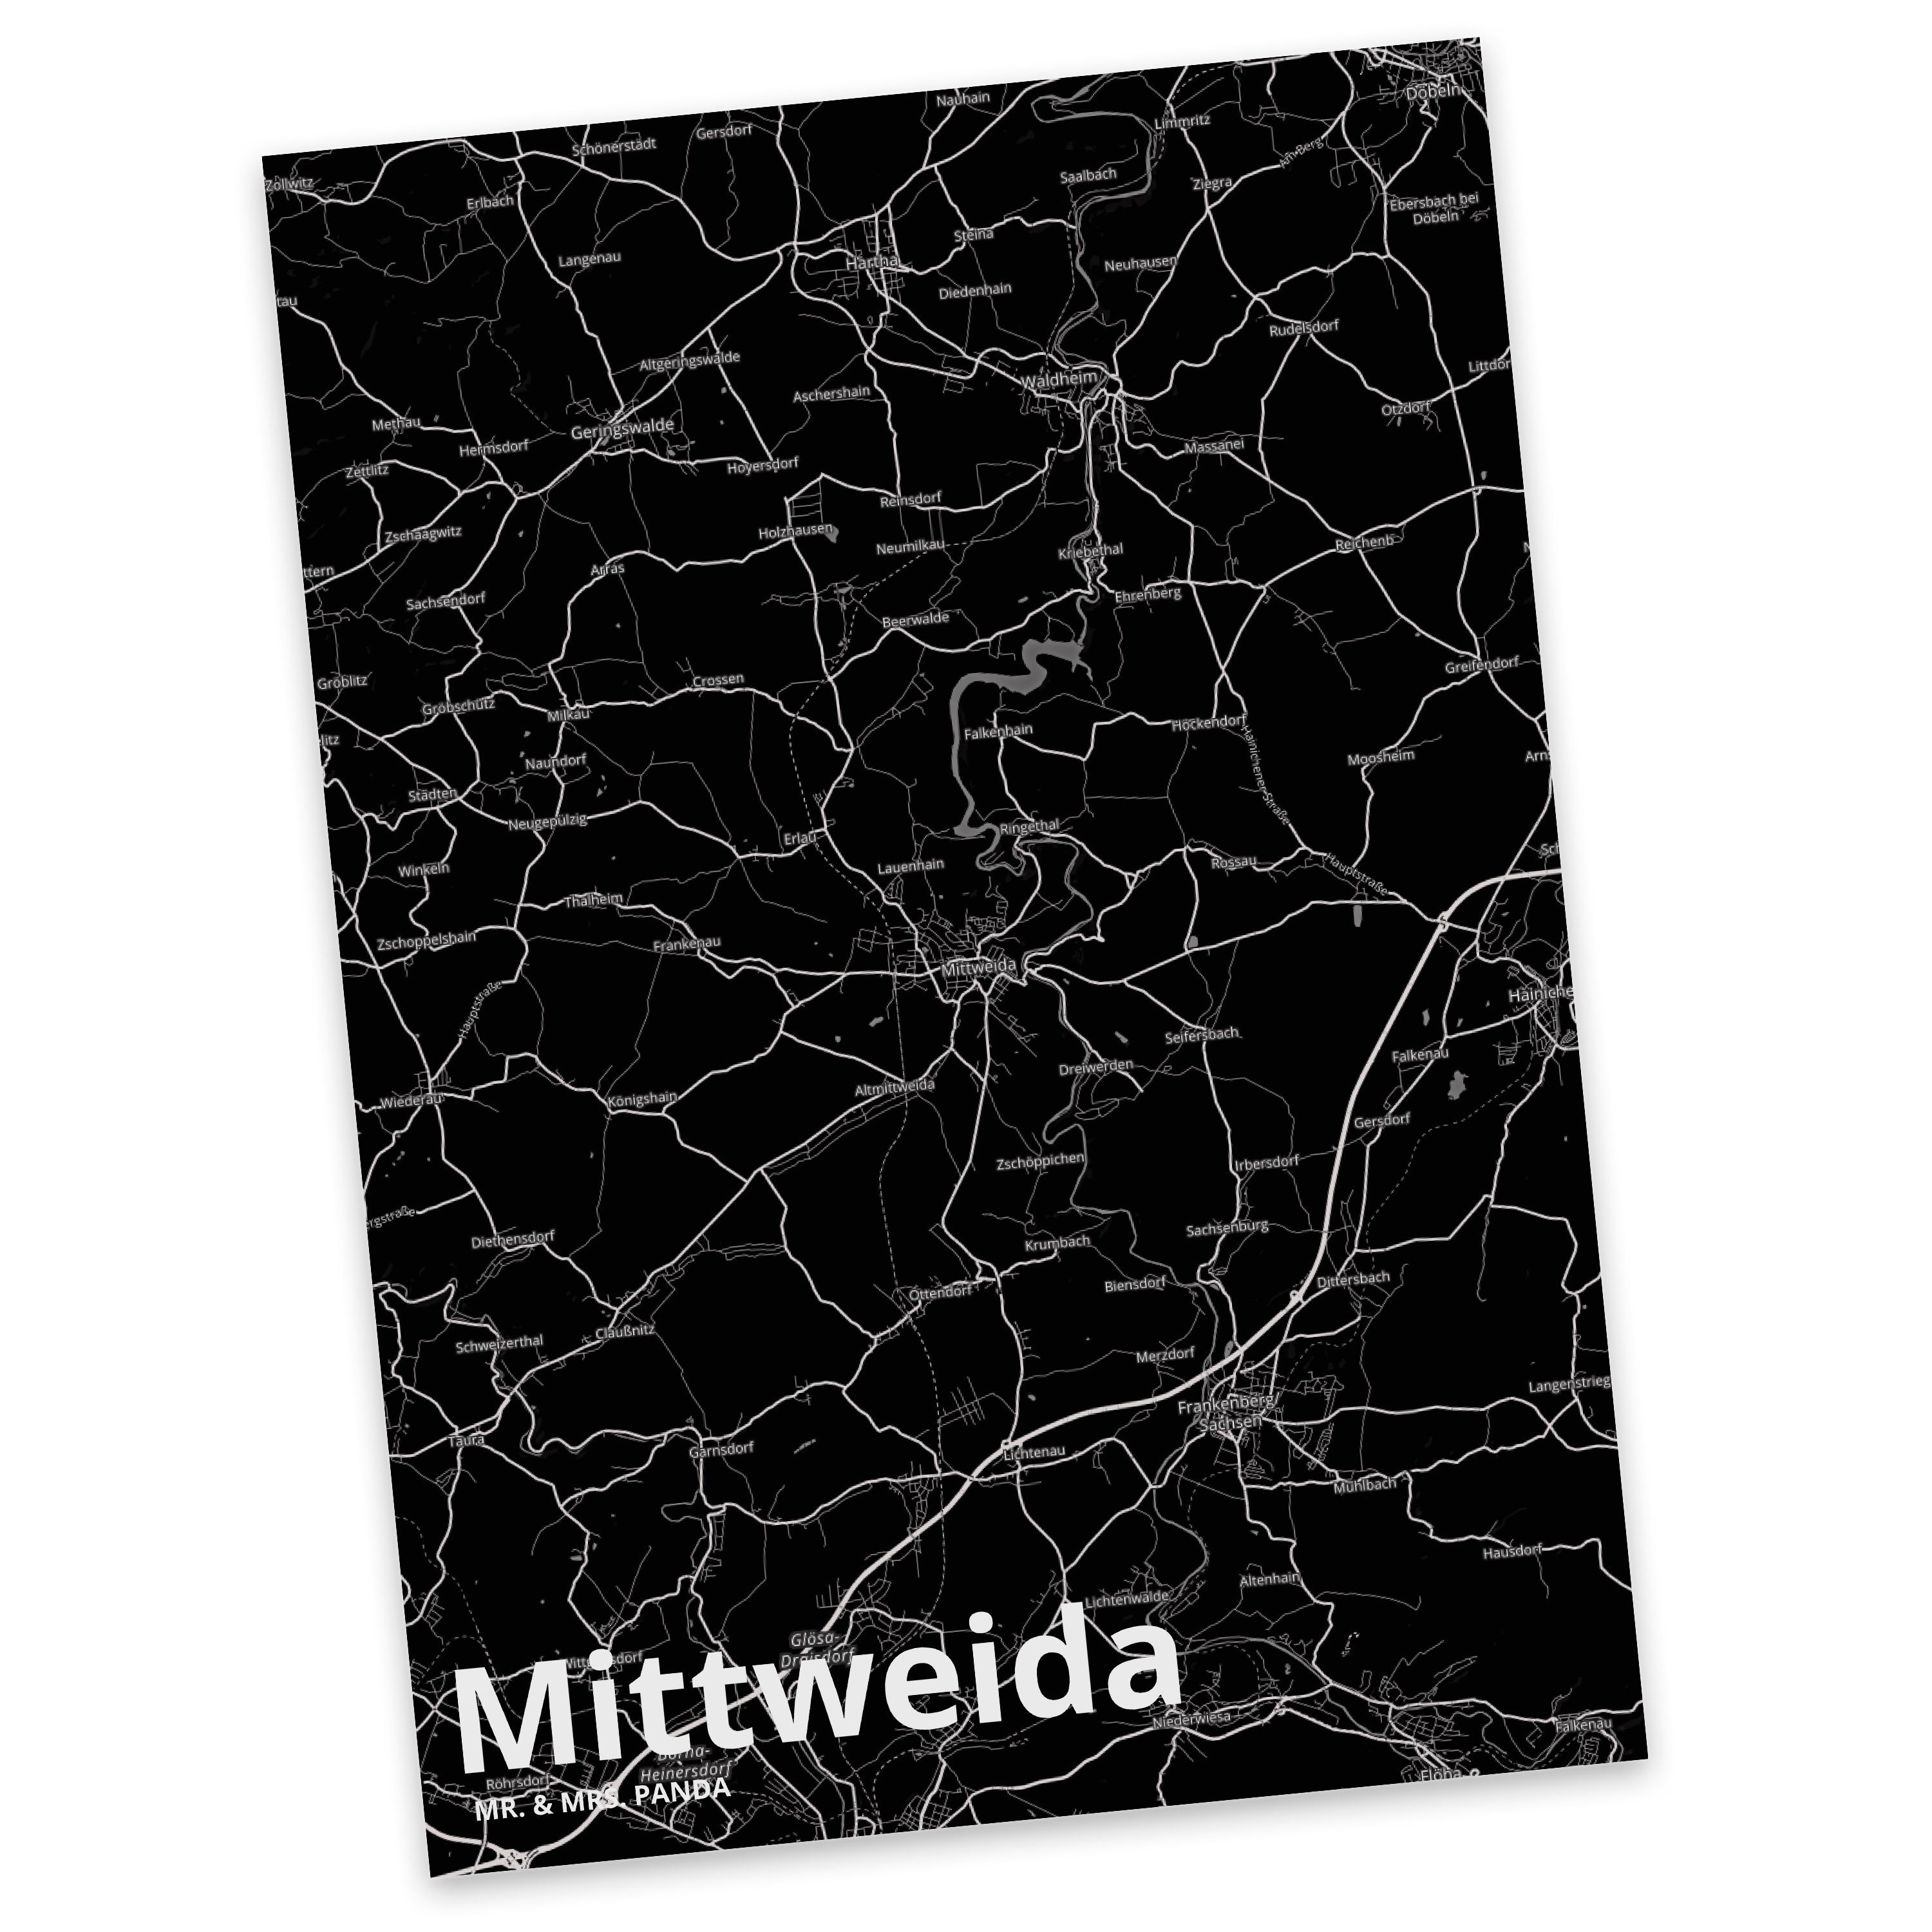 Mr. & Mrs. Dorf Landkarte Mittweida Panda Geschenk, Postkarte M Grußkarte, - Karte Stadt Städte